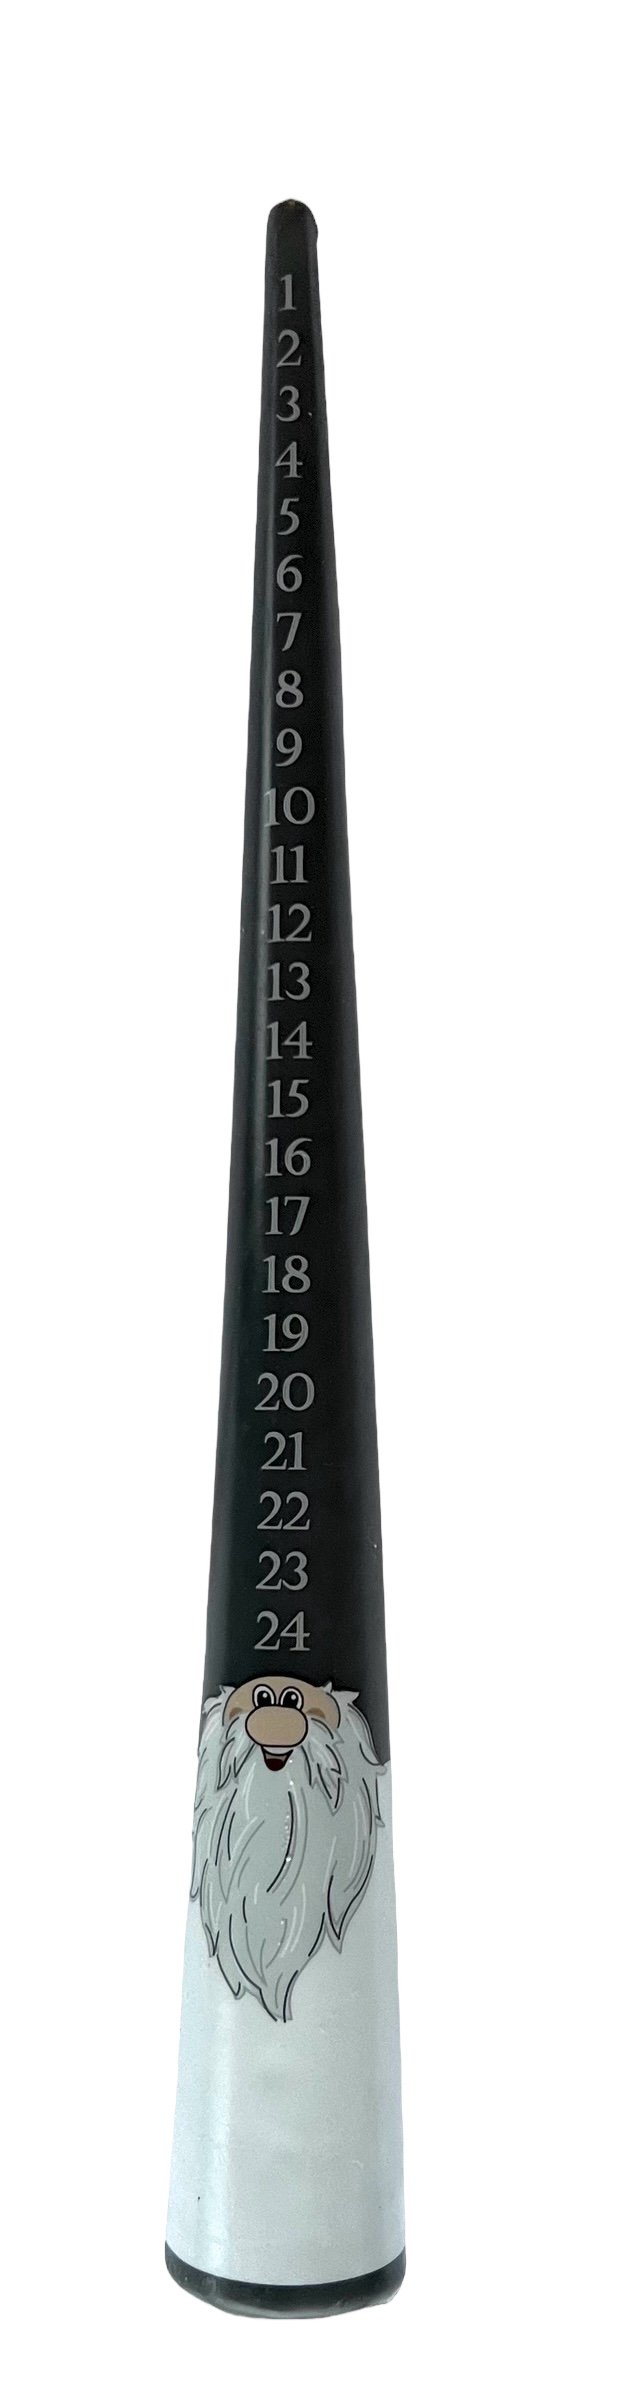 Gray calendar candle, 39 cm